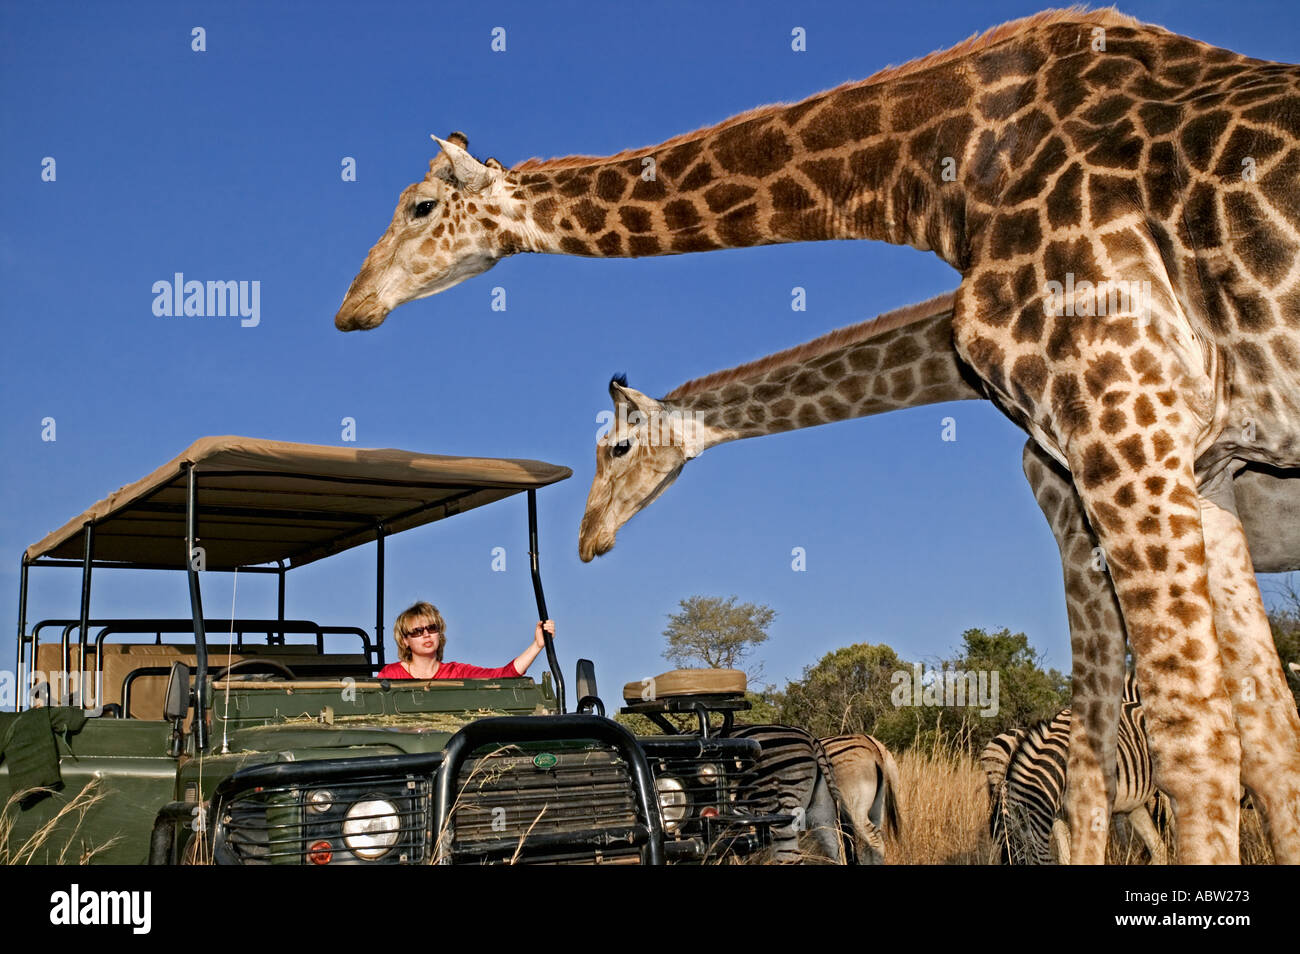 Südlichen Giraffe Giraffa Giraffe Giraffa mit Touristen auf Pirschfahrt privaten Wildreservat Modell freigegeben Südafrika Stockfoto